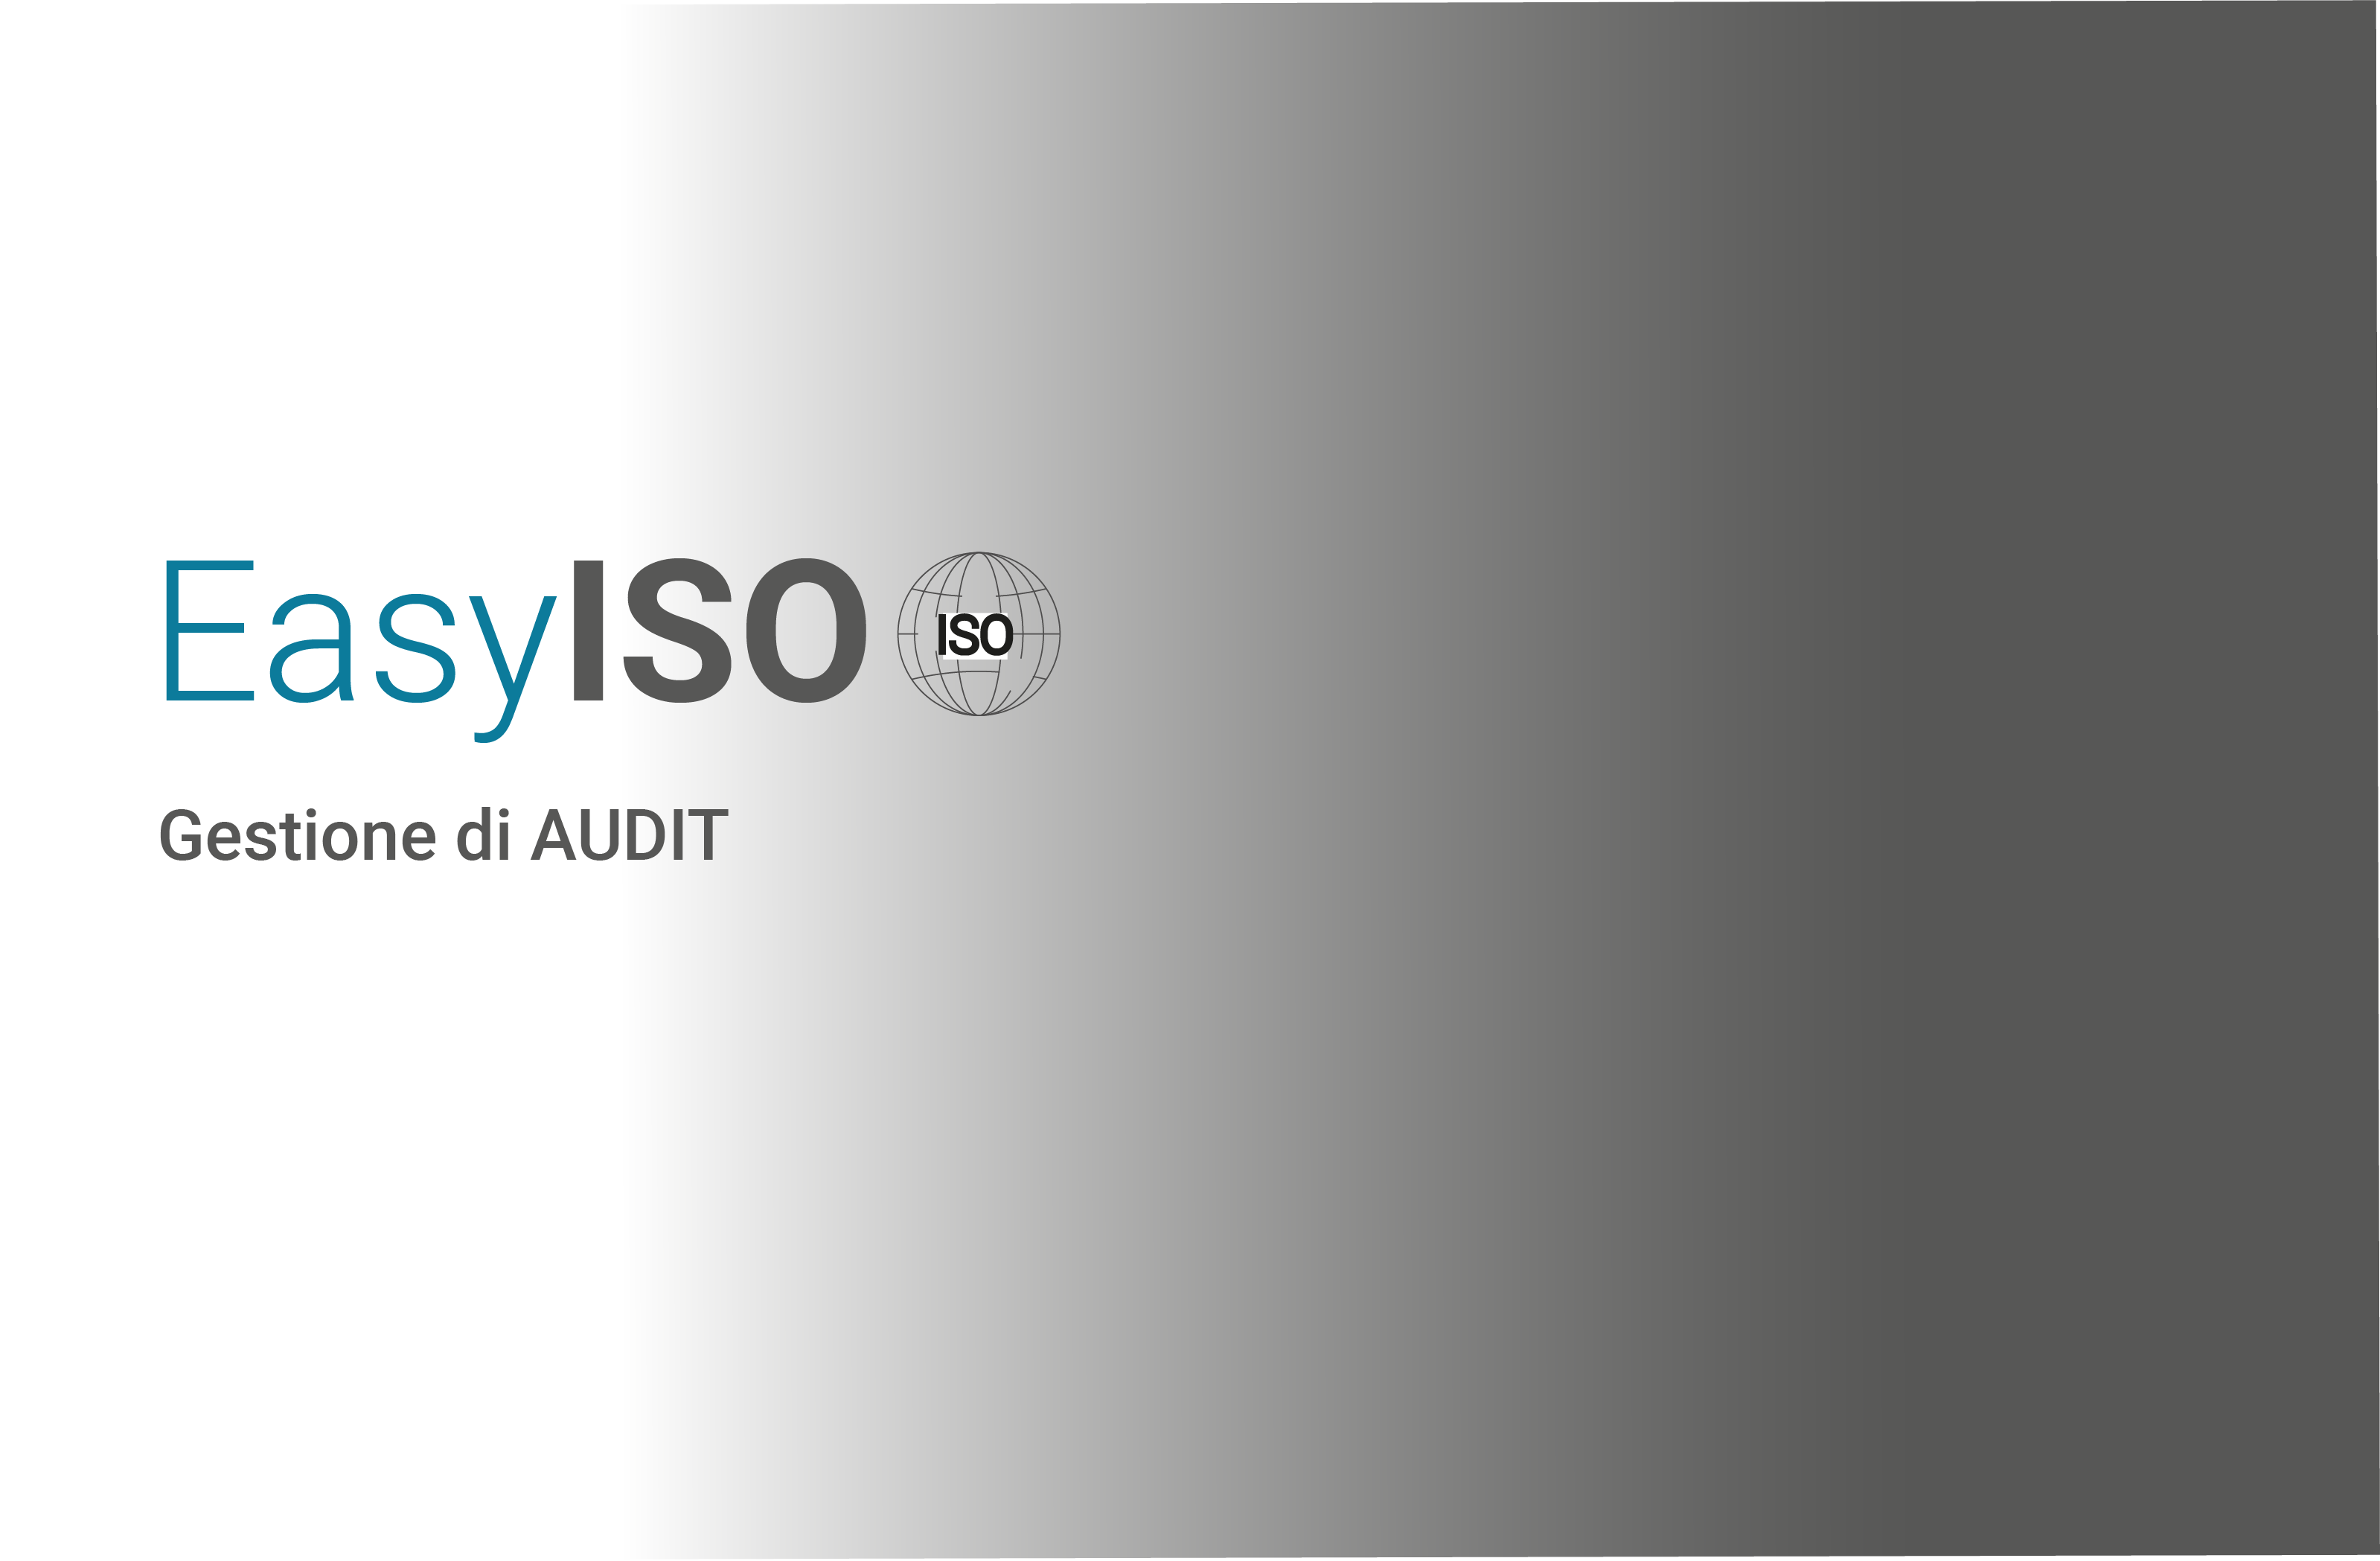 EasyISO: La soluzione completa per audit di controllo e analisi aziendale